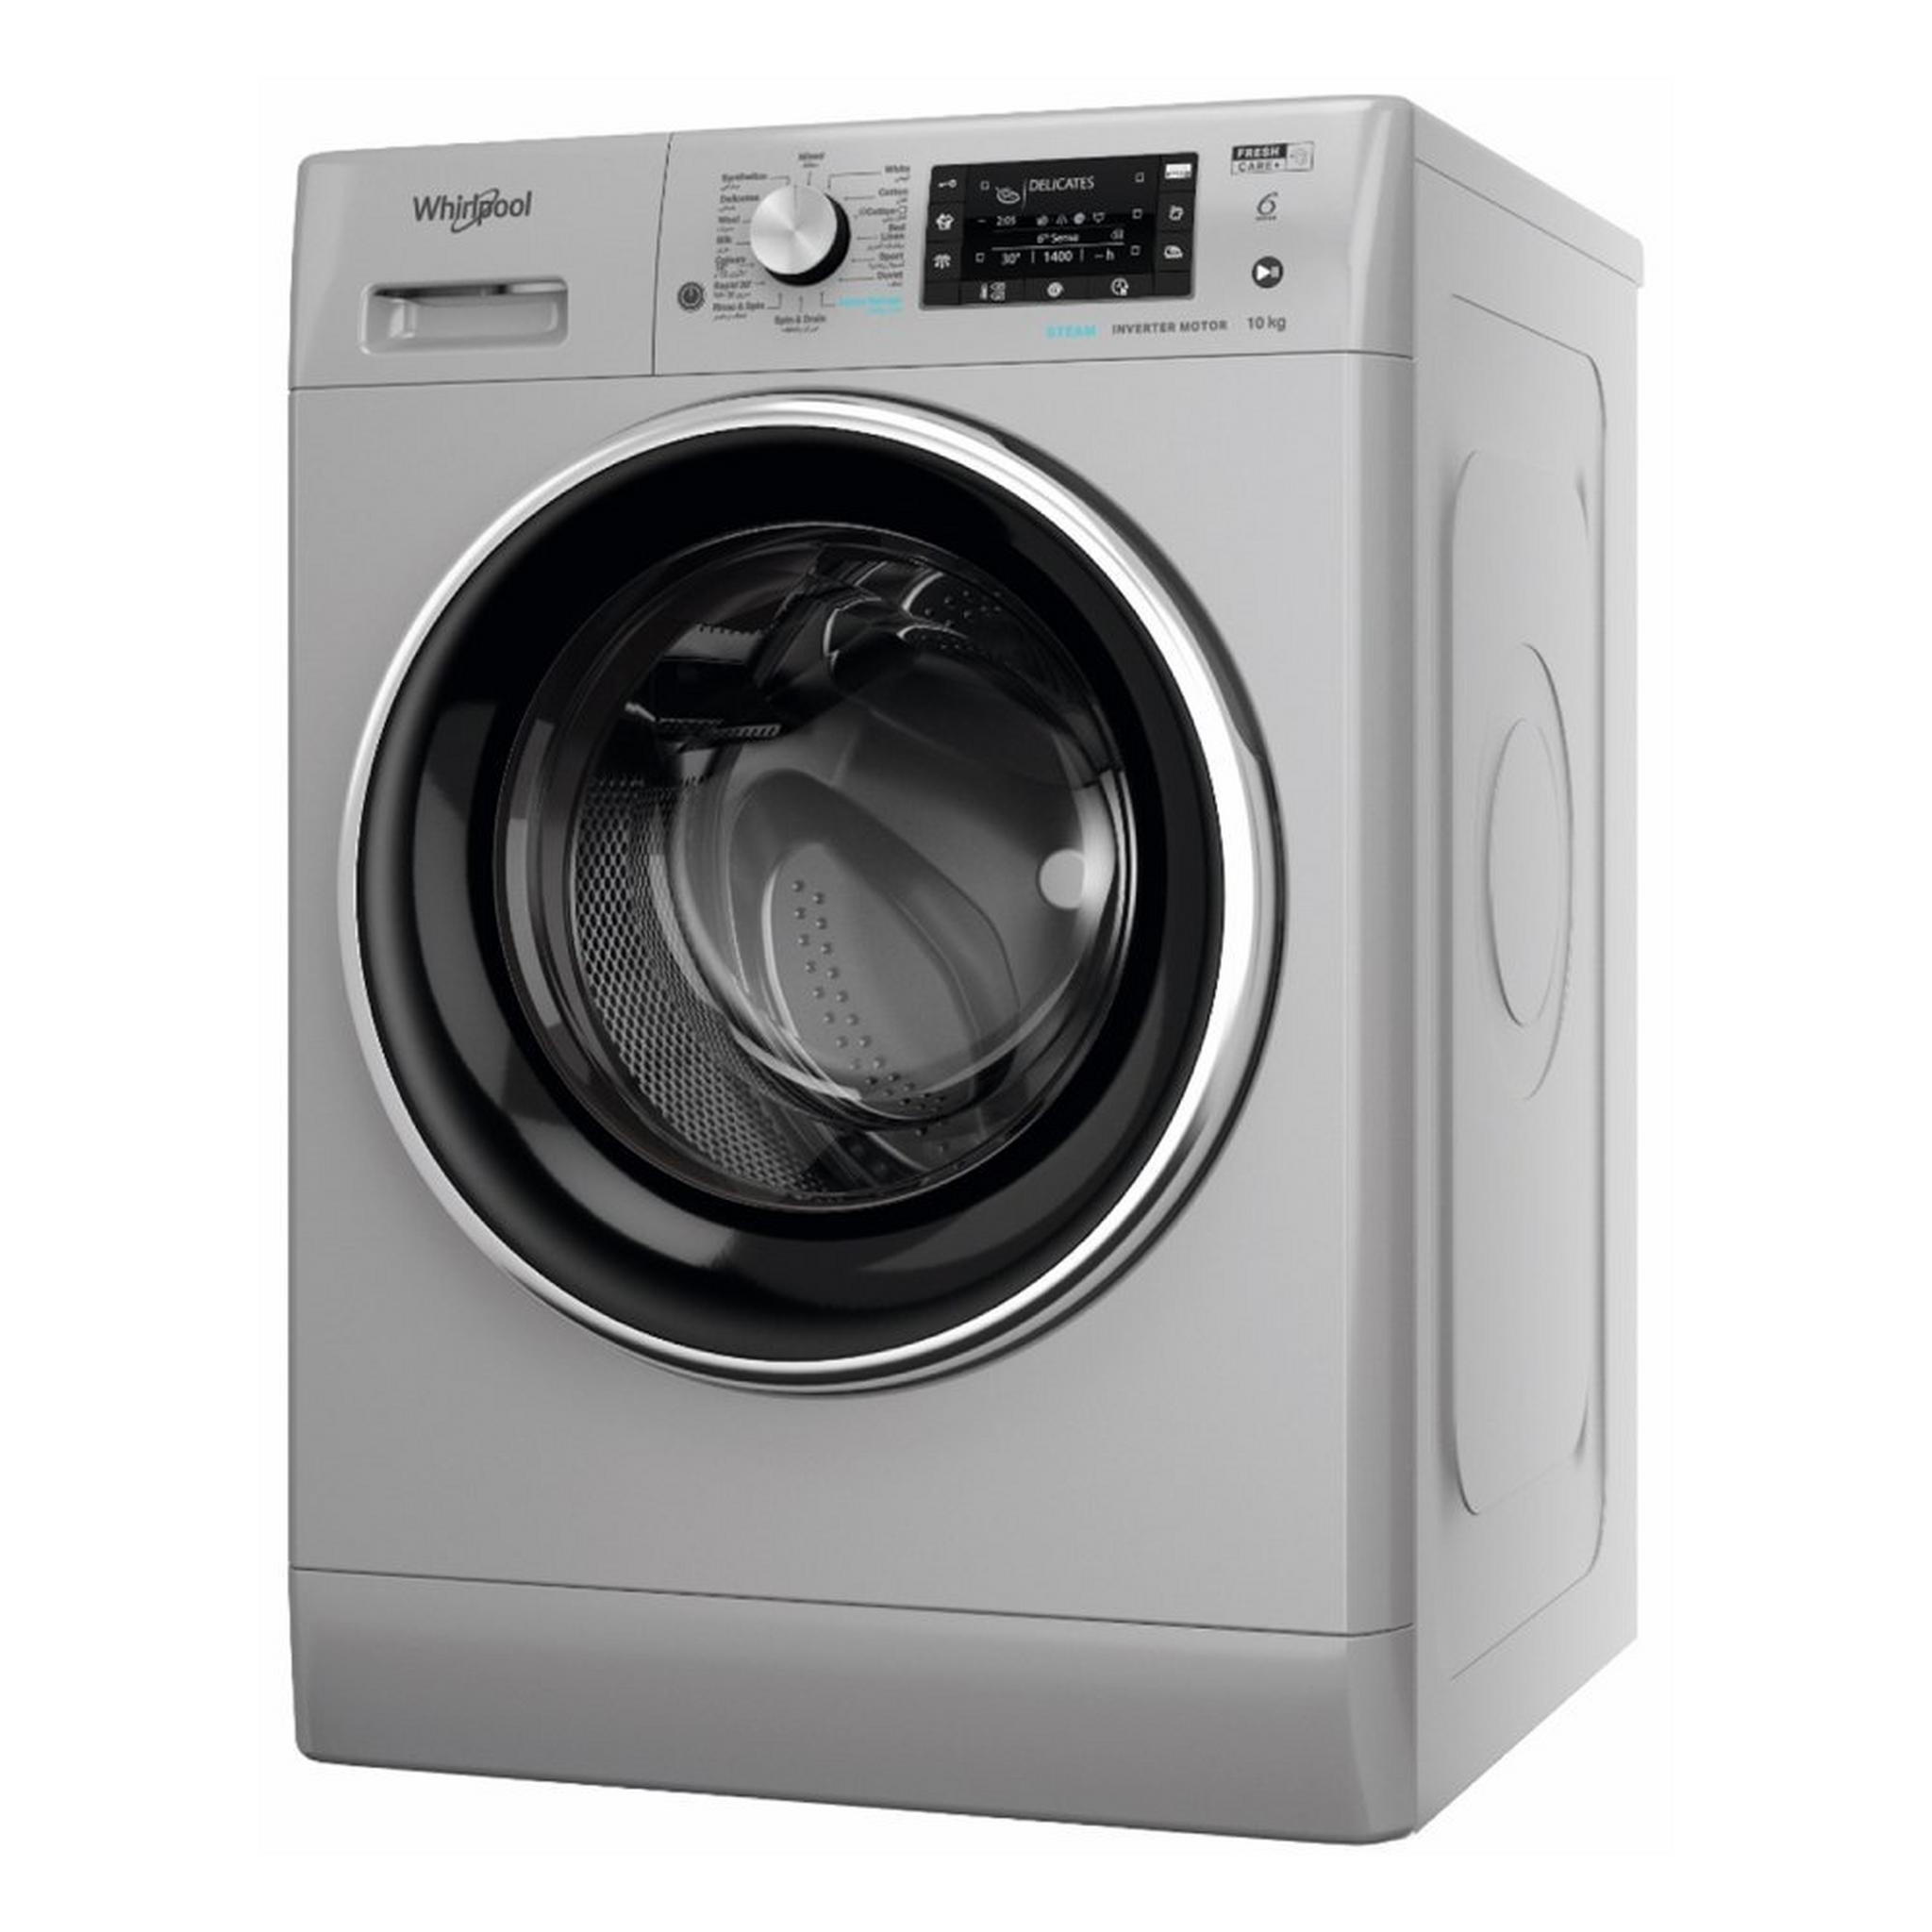 Whirlpool 9kg Condenser Dryer + 10kg Front Load Washing Machine Silver